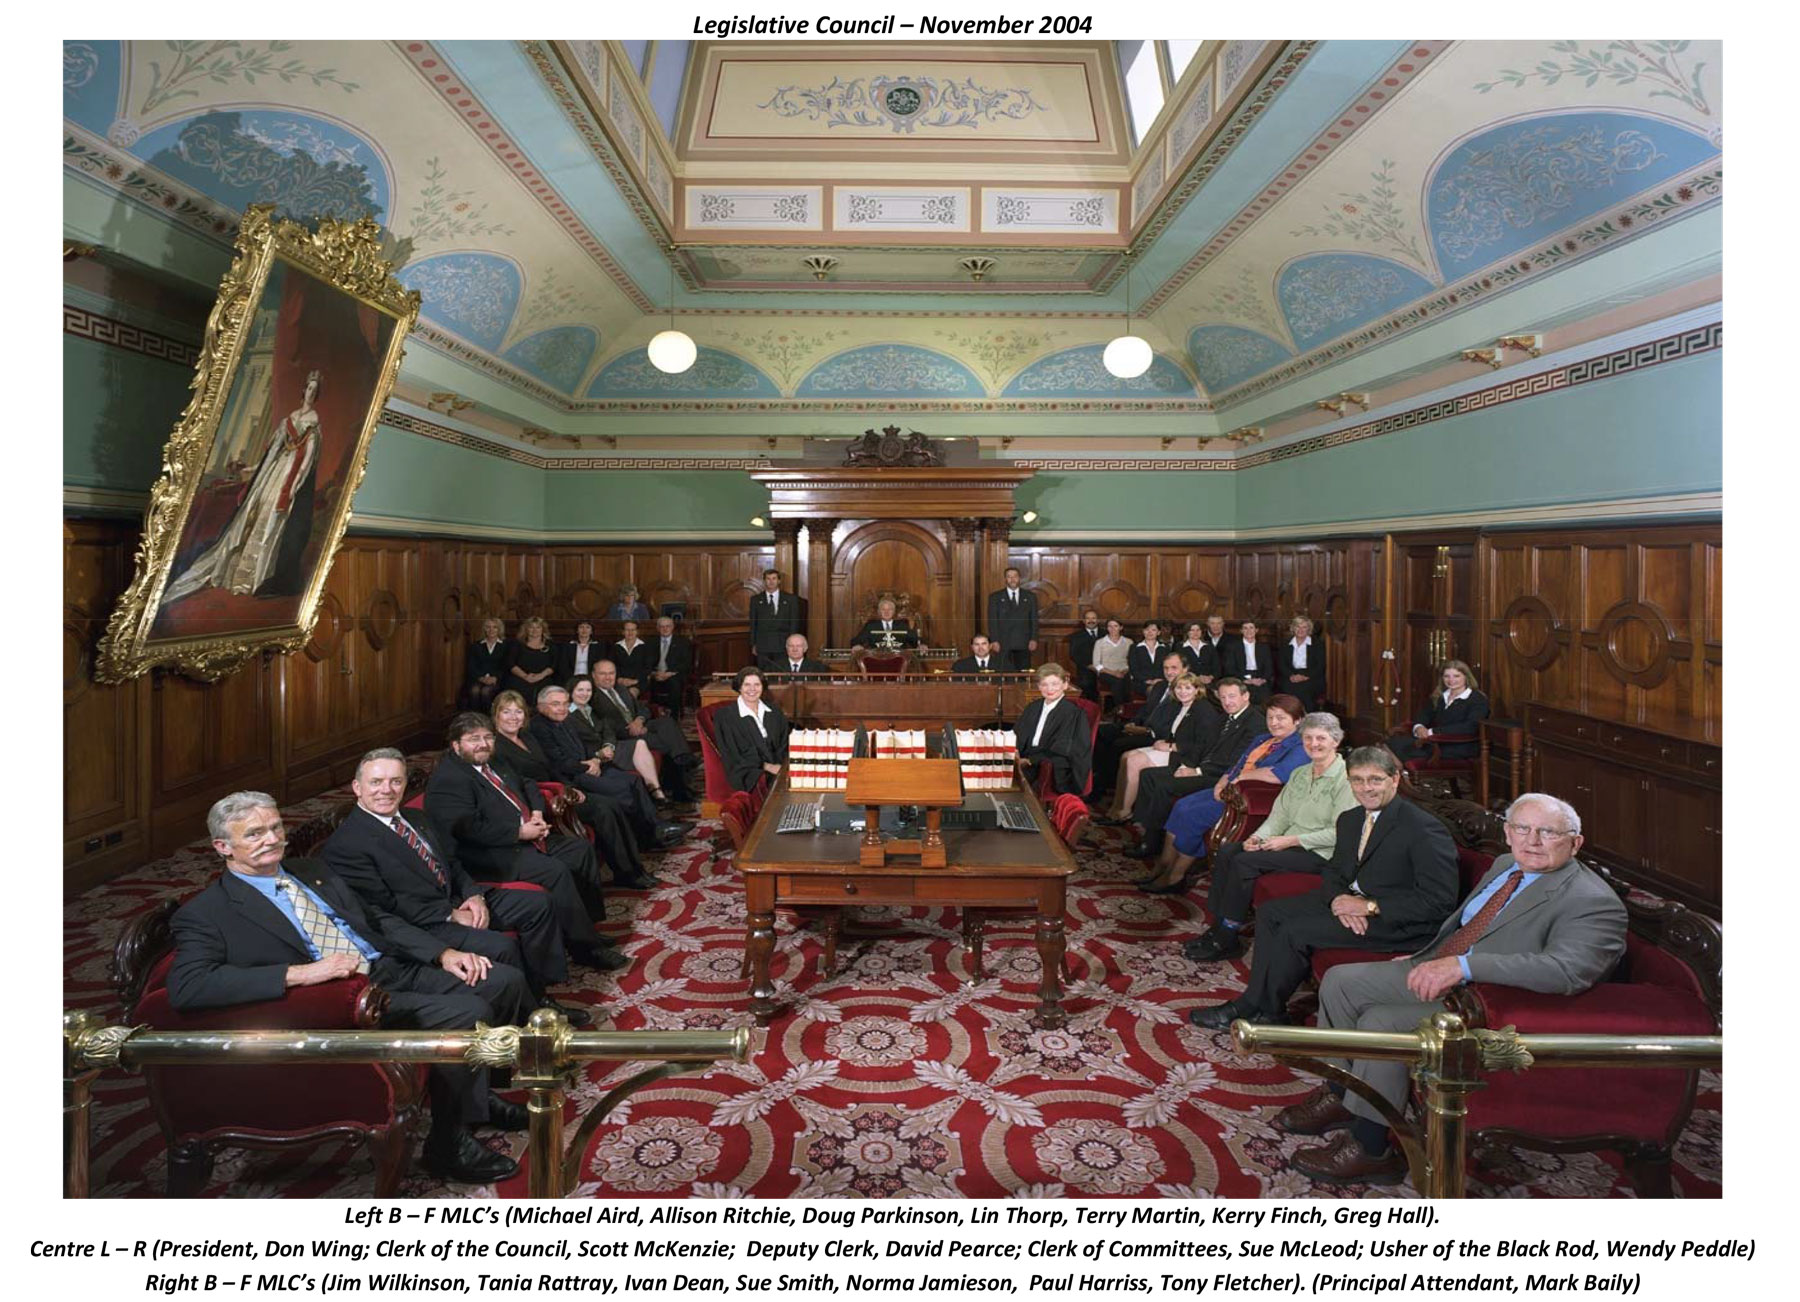 Legislative Council - November 2004